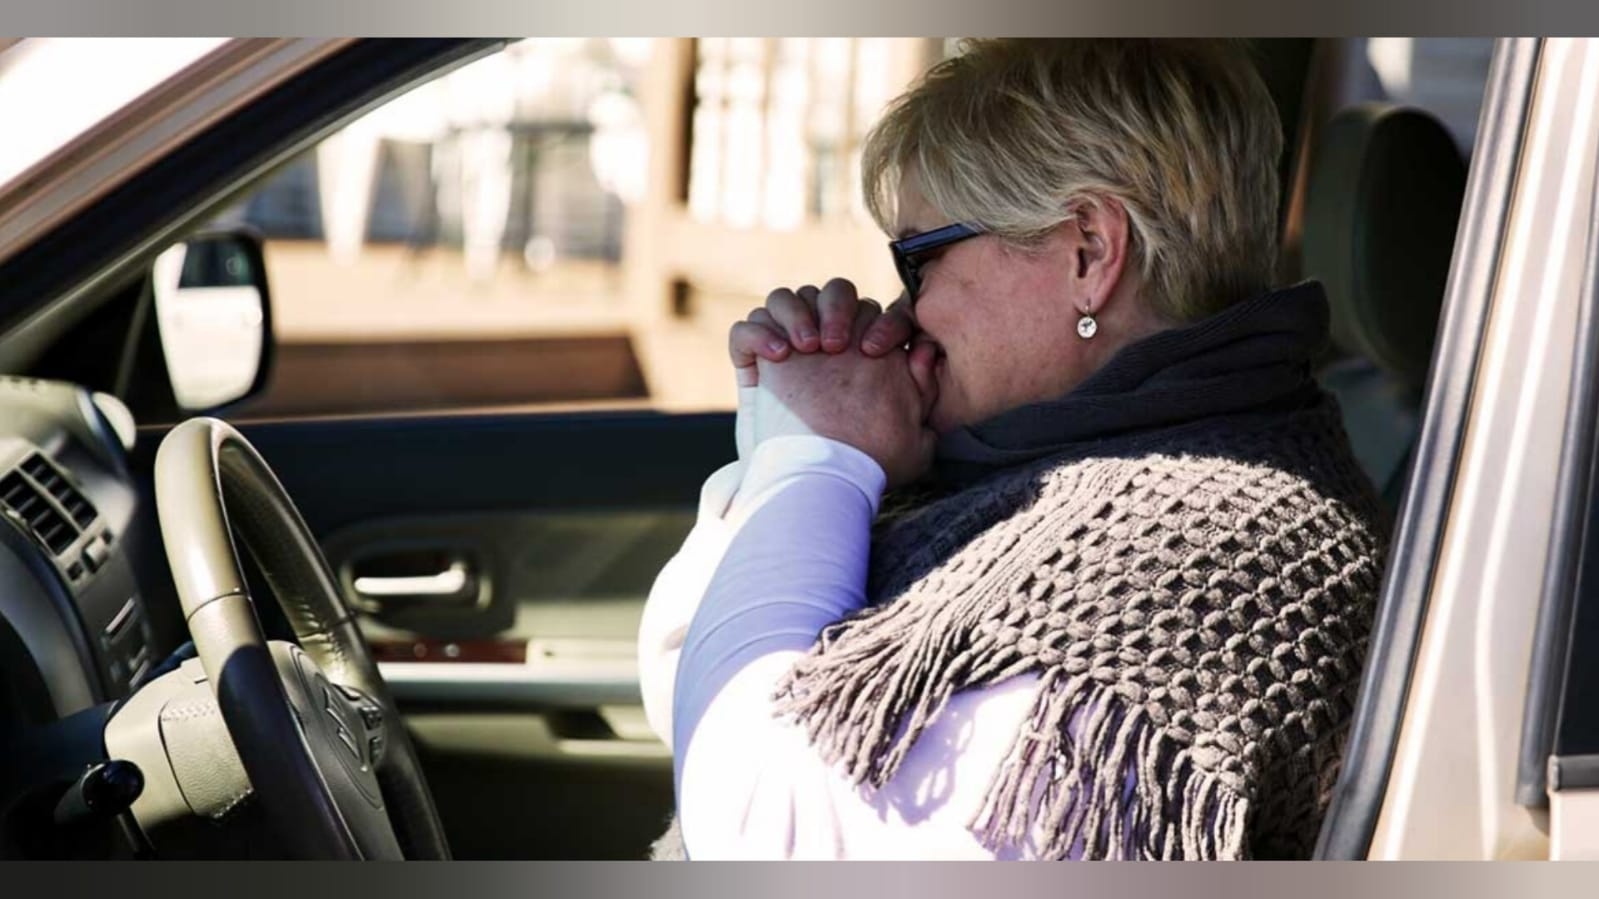 Igreja doa carros para jovens órfãos e mães solteiras nos EUA: “Deus os vê”